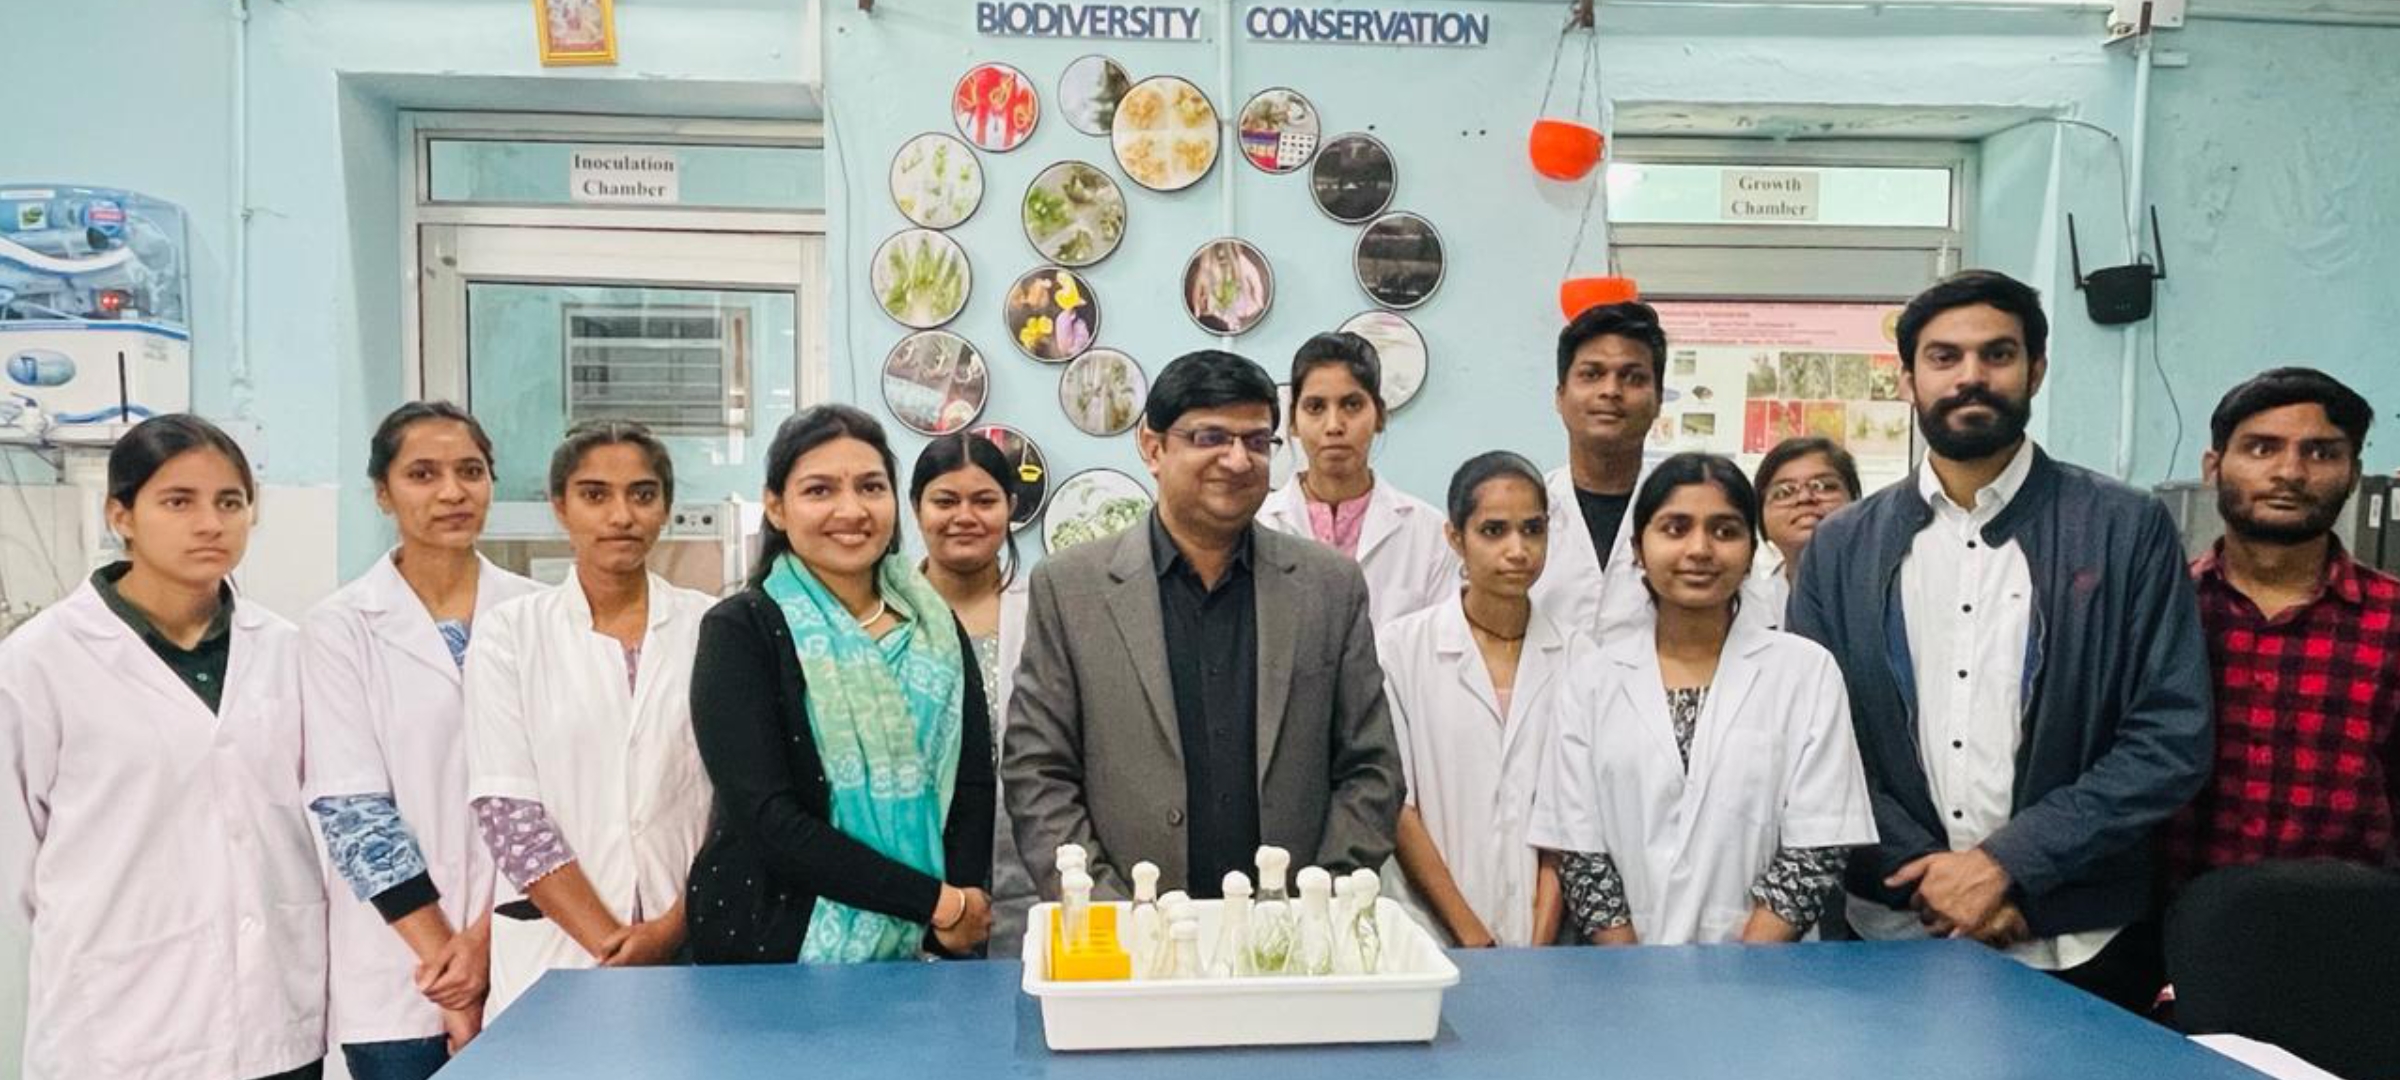 भूपाल नोबल्स विश्वविद्यालय के जैव प्रौद्योगिकी विभाग के विद्यार्थियों ने किया पादप उत्तक संवर्धन प्रायोगशाला का भ्रमण